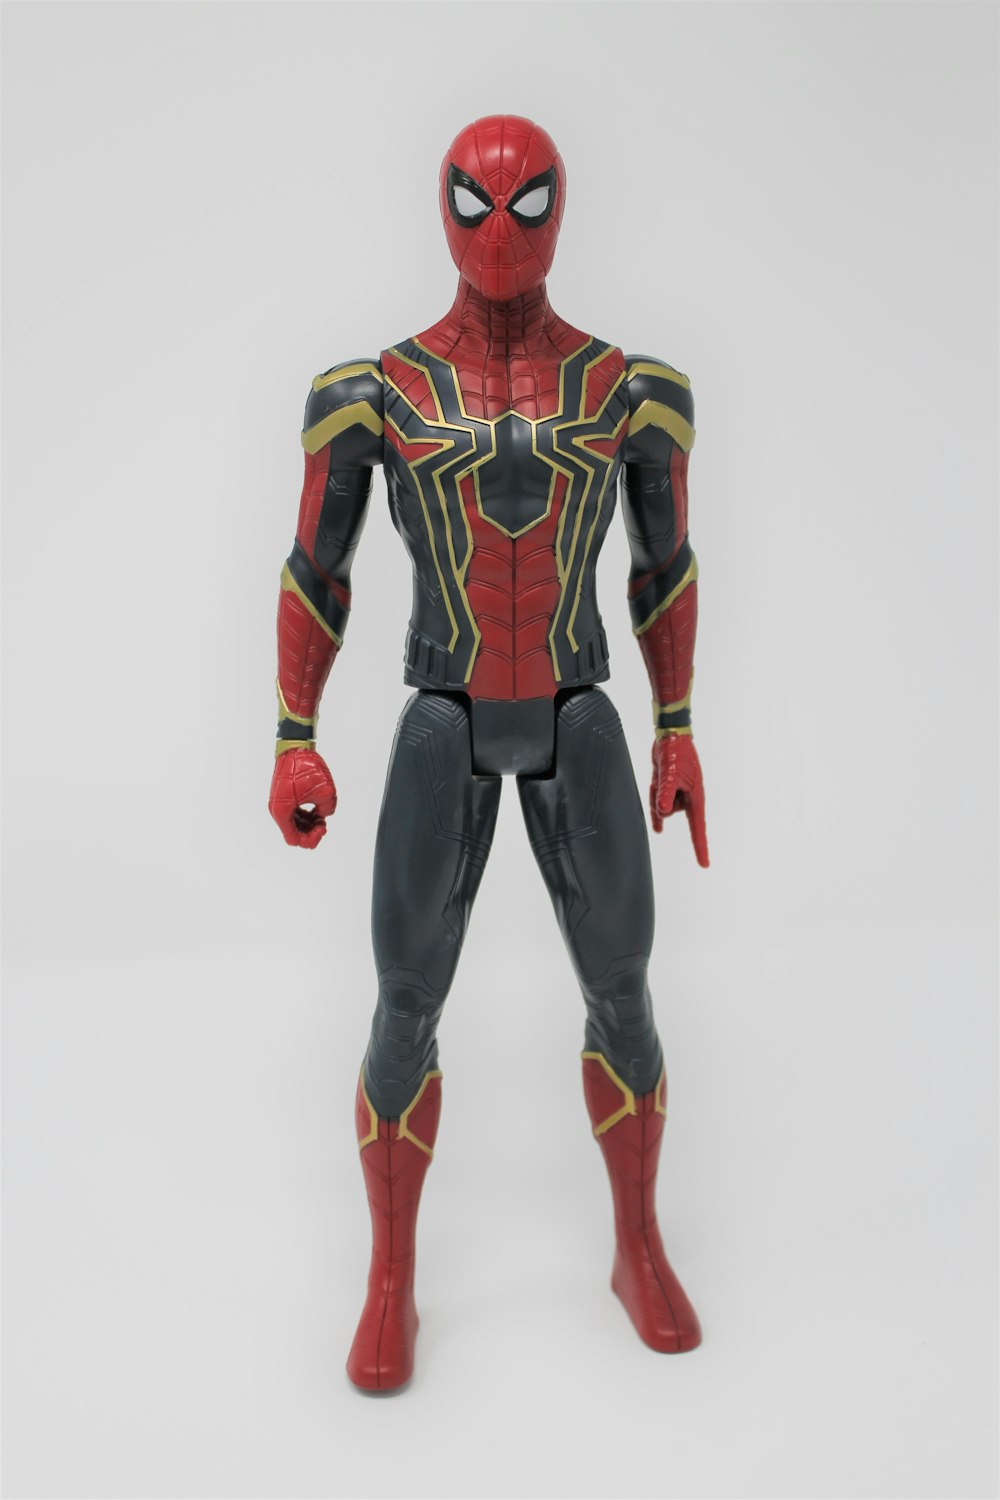 アイアン・スパイダーのスーツを着たマーベルのスパイダーマンのアクションフィギュア